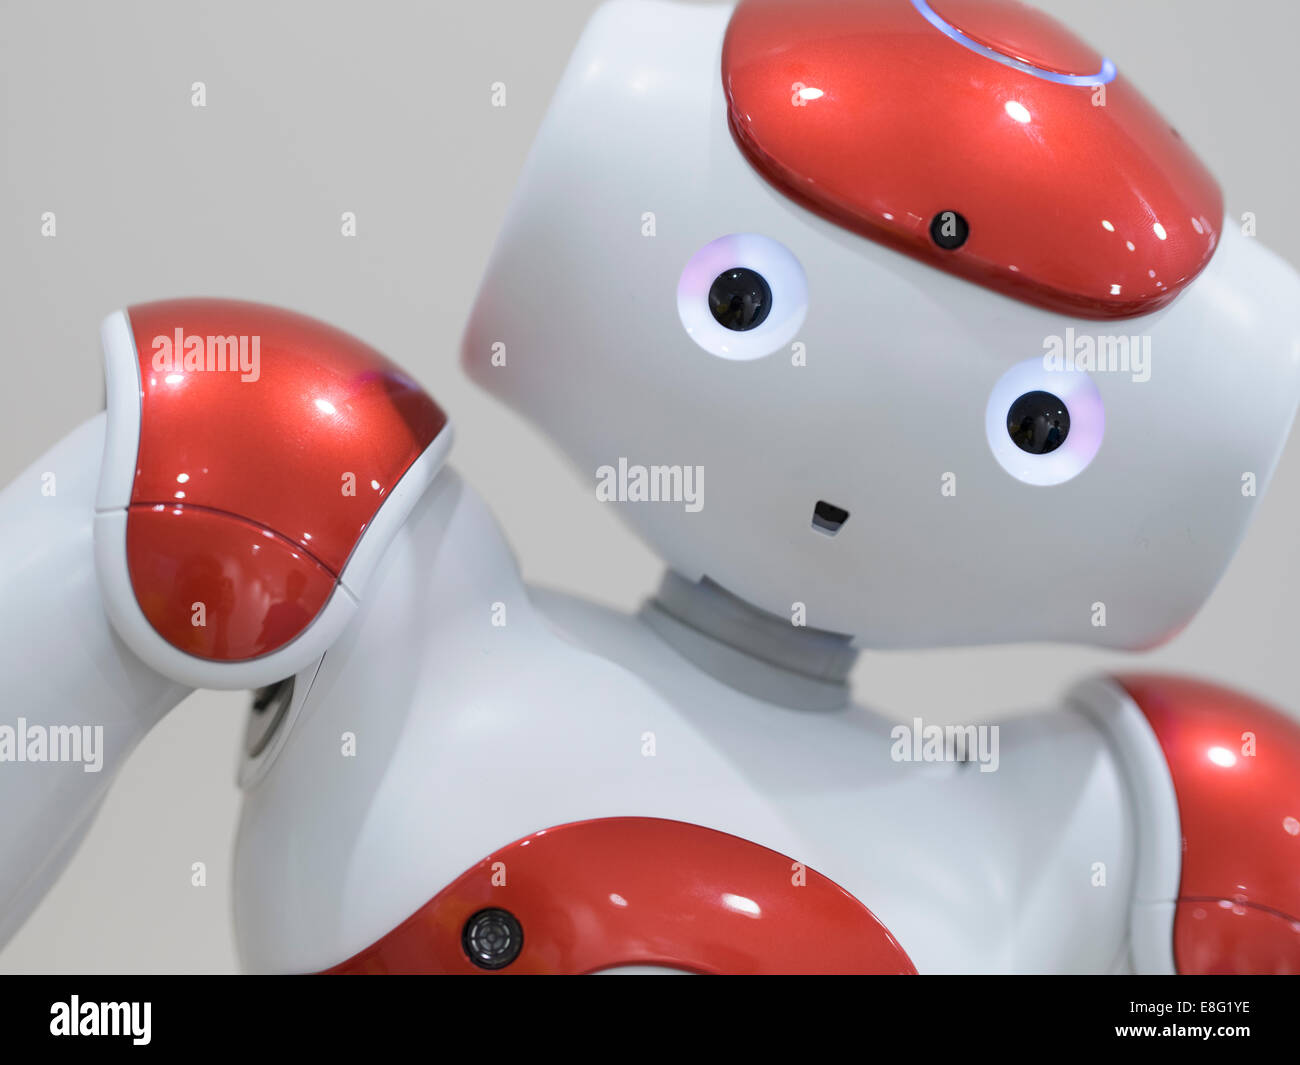 Un organismo autónomo, Nao robot humanoide programable por Aldebaran Robotics. Foto de stock